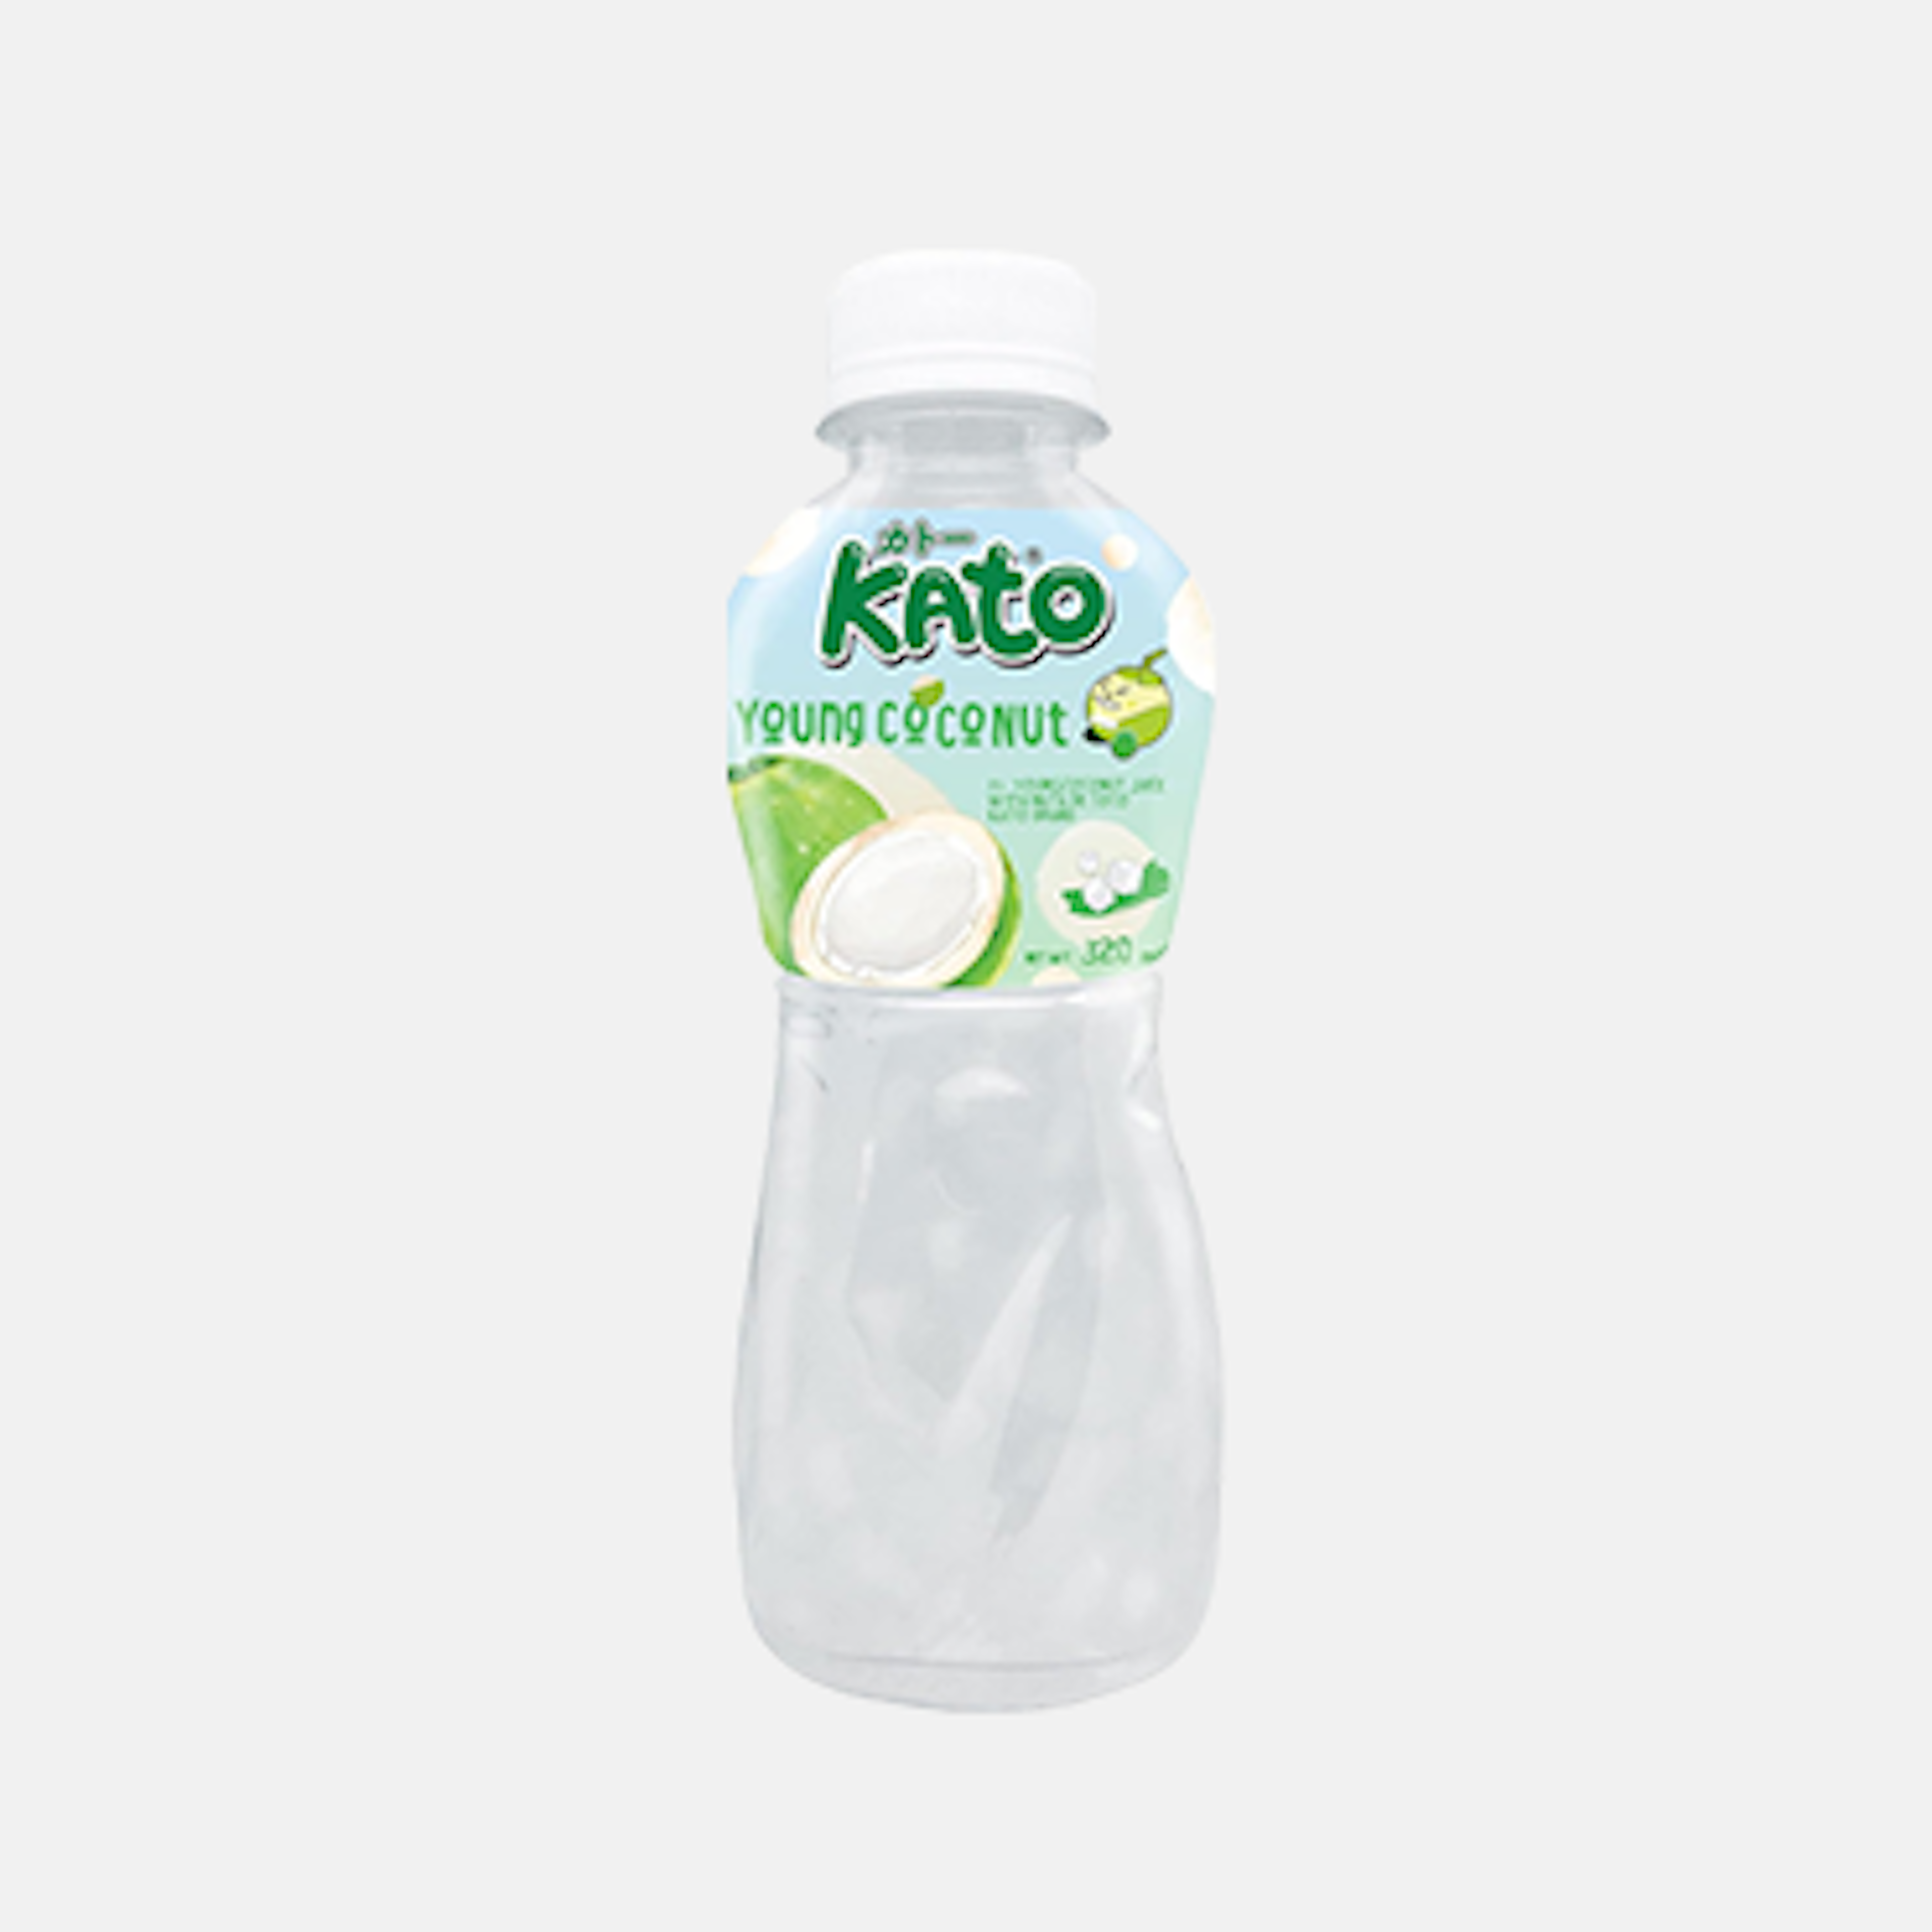 KATO Kokoswasser mit Nata De Coco 320ml - Erfrischendes und gesundes Getränk